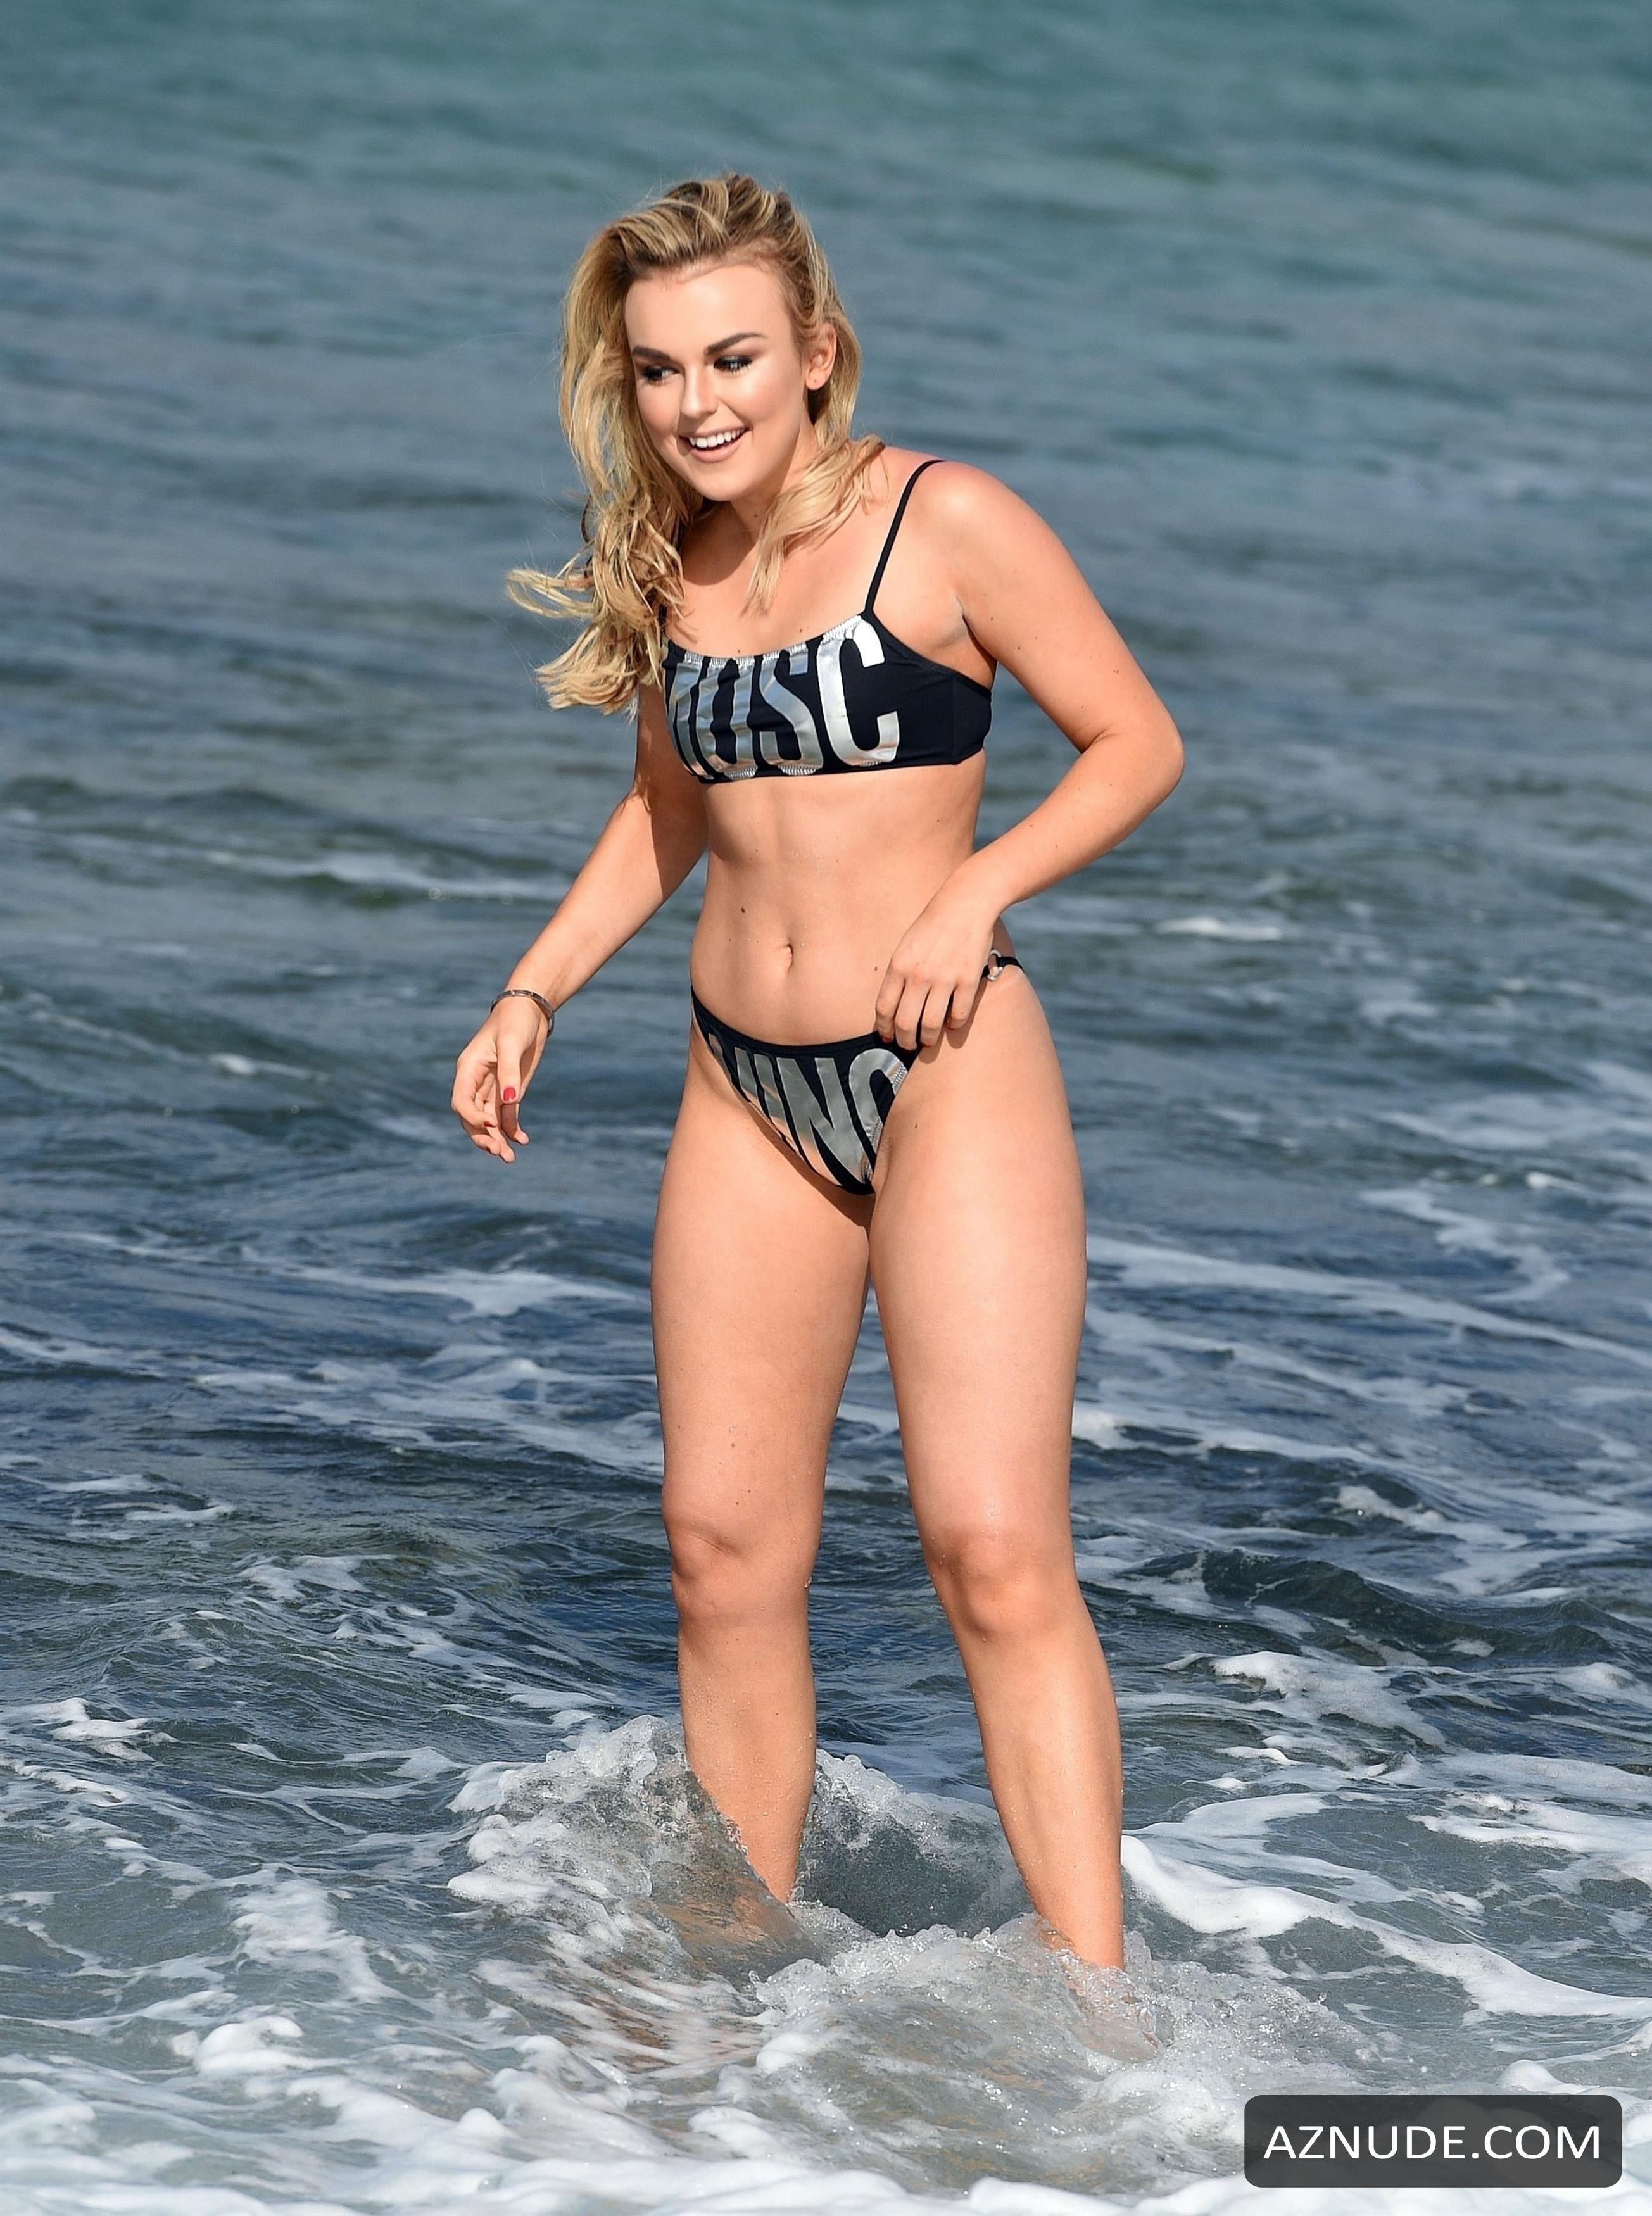 Tallia Storm Sexy Body In A Bikini While Enjoying The Beach In Sunny